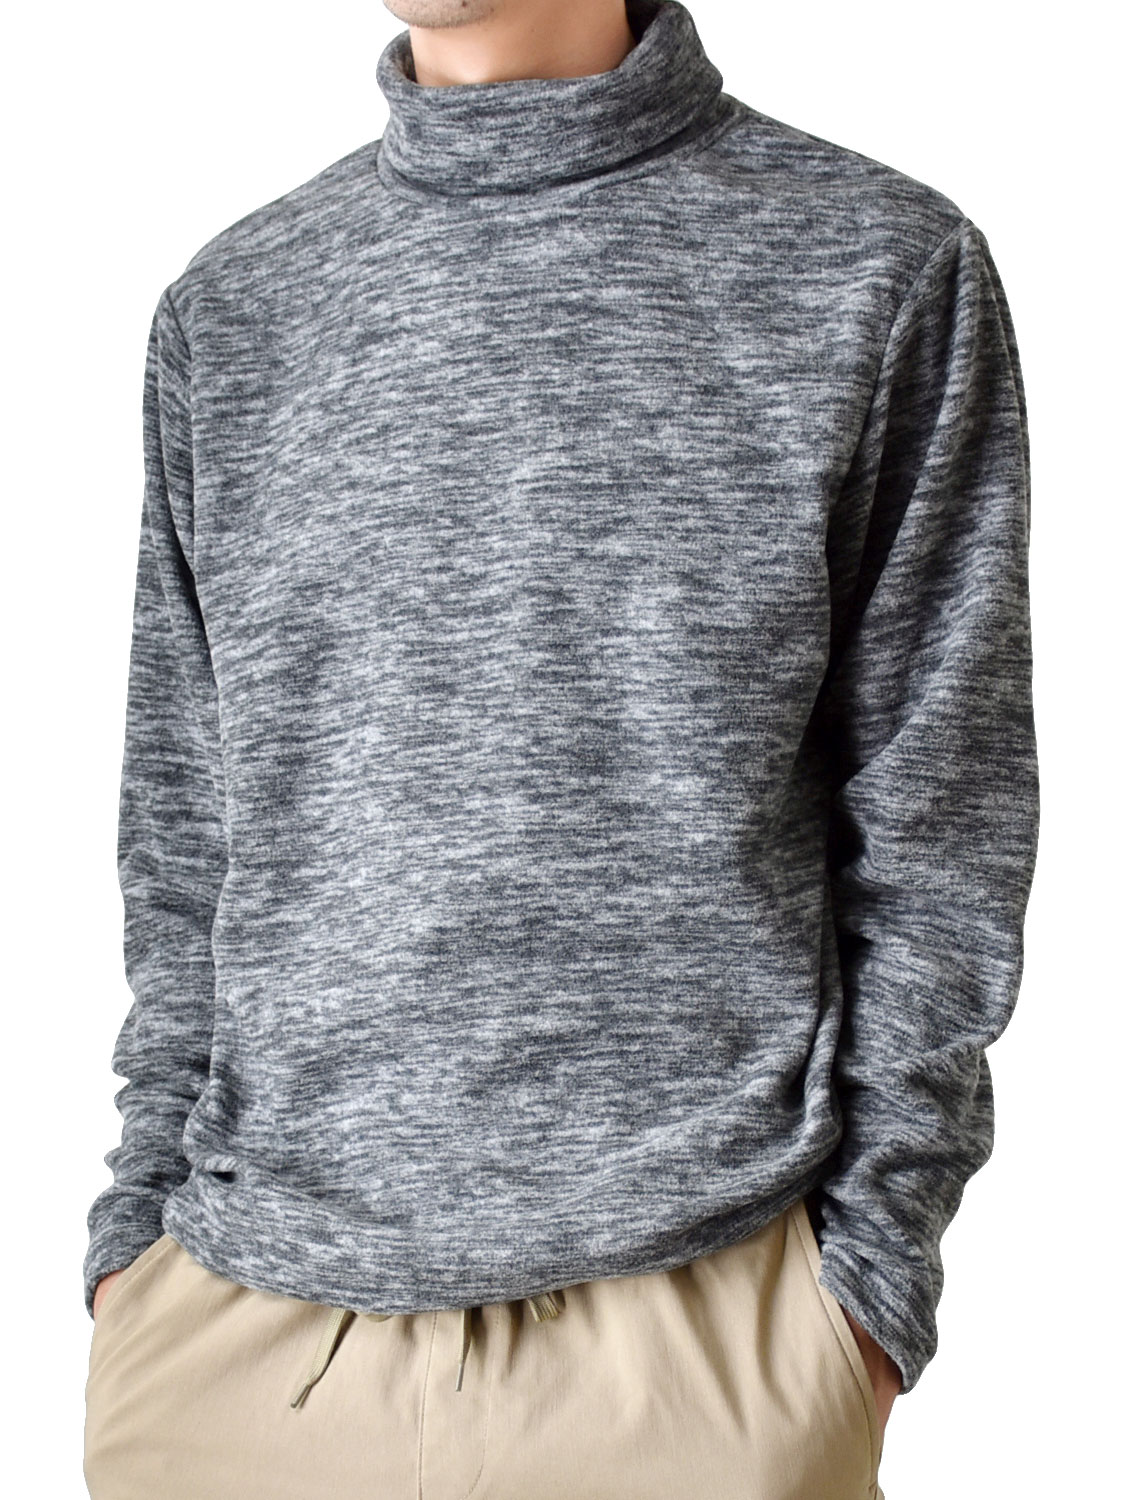 フリース Tシャツ ロンT メンズ タートルネック 裏起毛 送料無料 通販YC カットソー 暖か